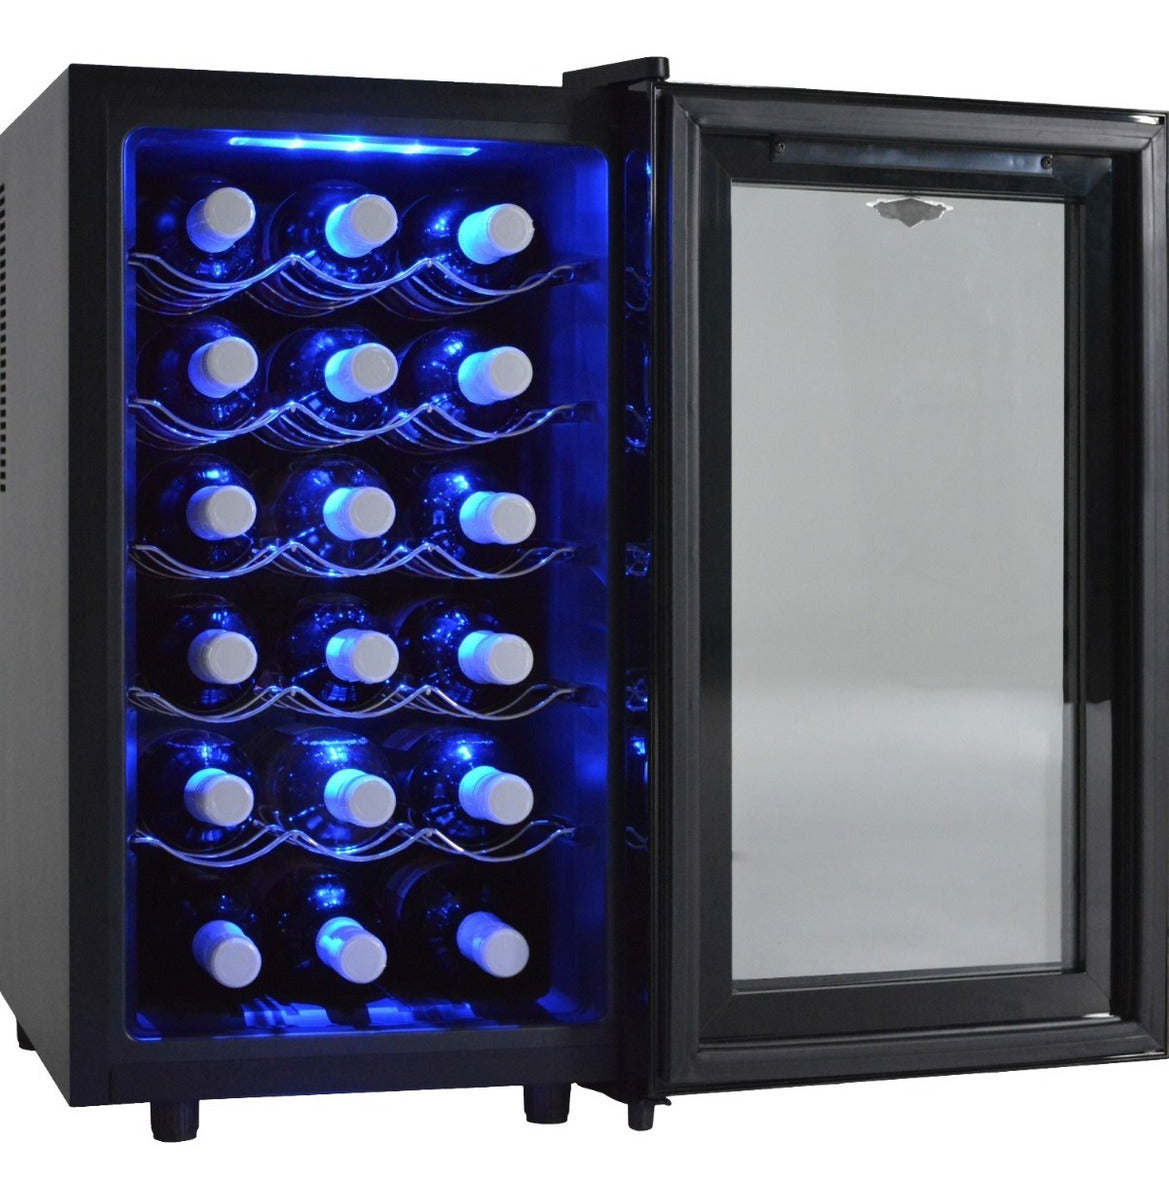 Cava de Vinos Refrigerador 18 Botellas Calidad Exclusive Premium